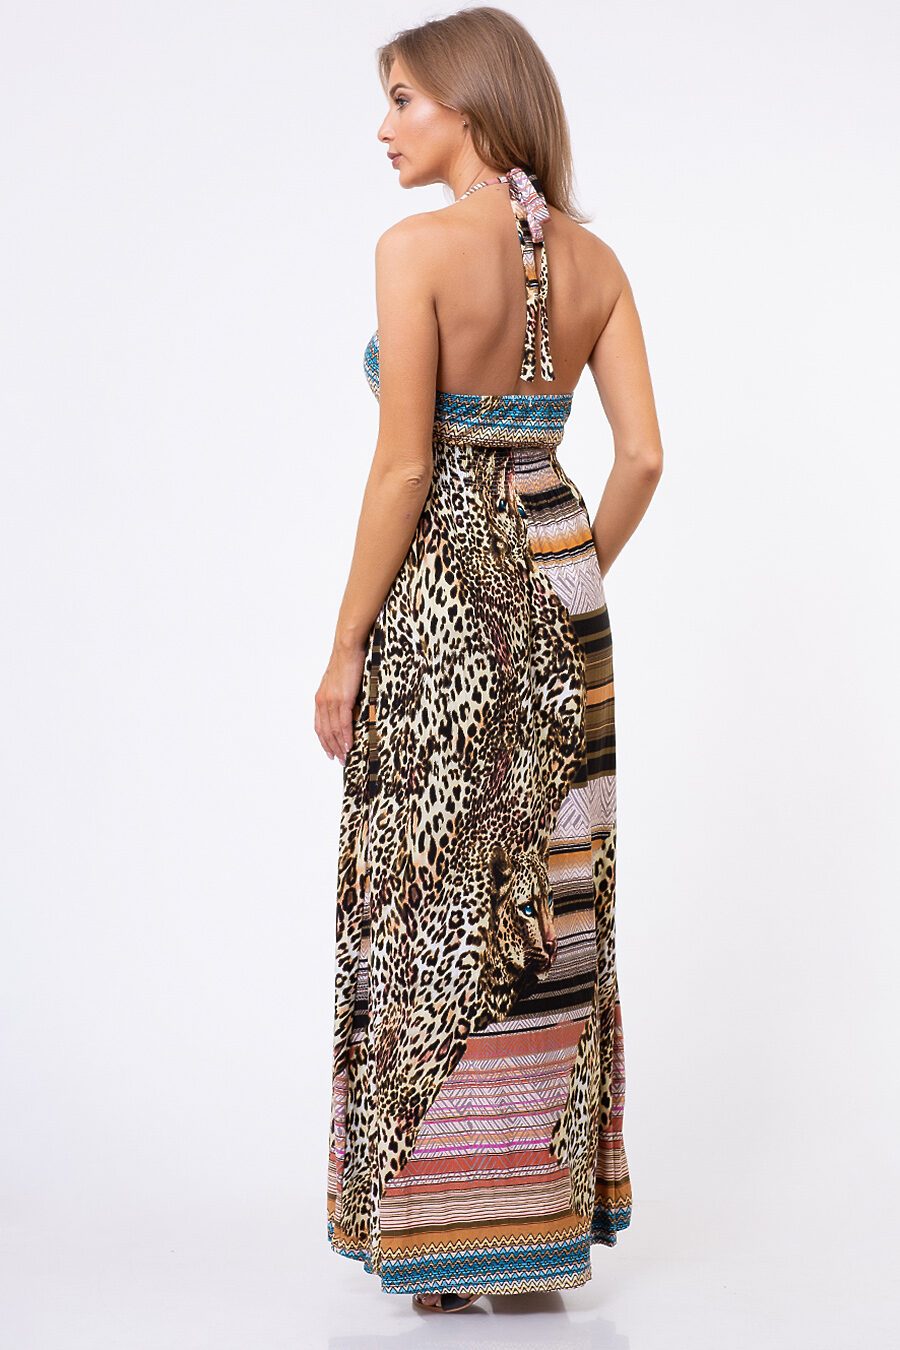 Платье TUTACHI (125213), купить в Moyo.moda